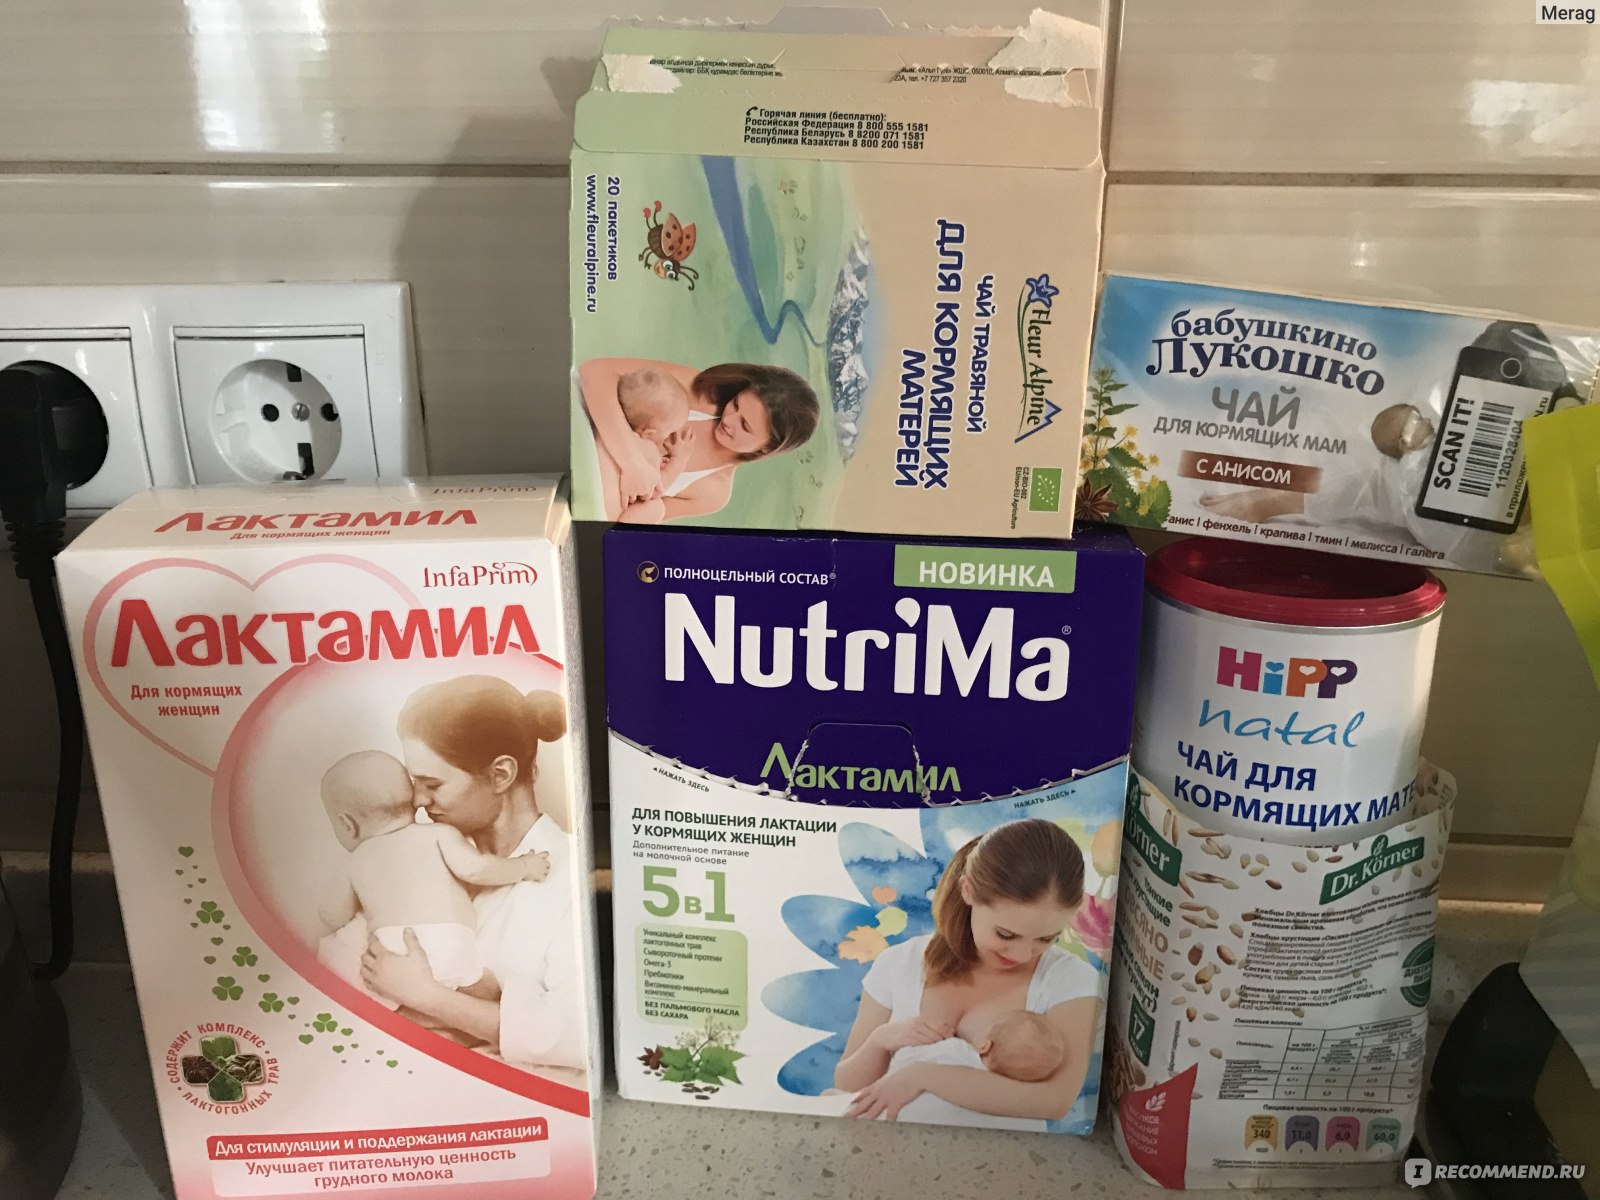 Молока может быть больше! о способах повышения лактации. как увеличить количество молока у кормящей мамы